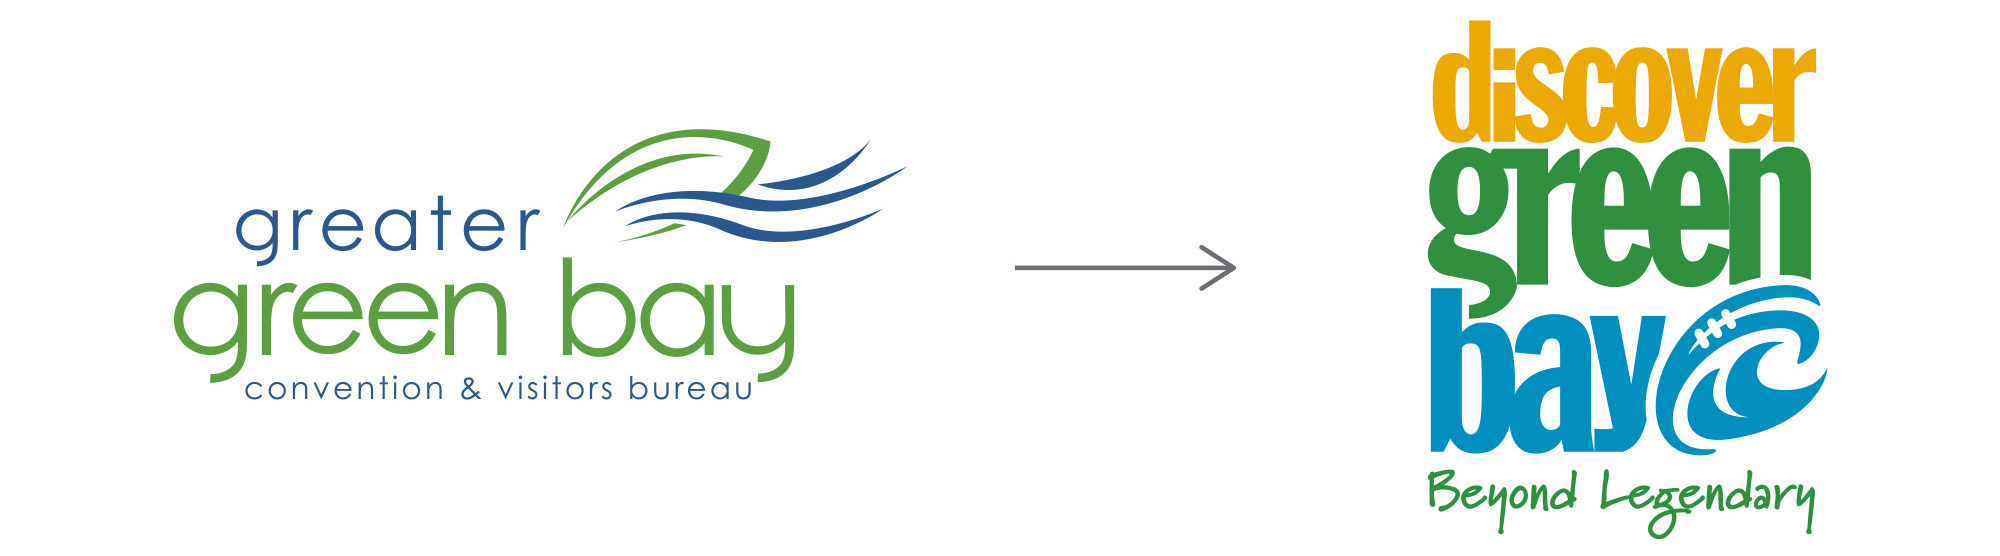 Discover Green Bay - Logo